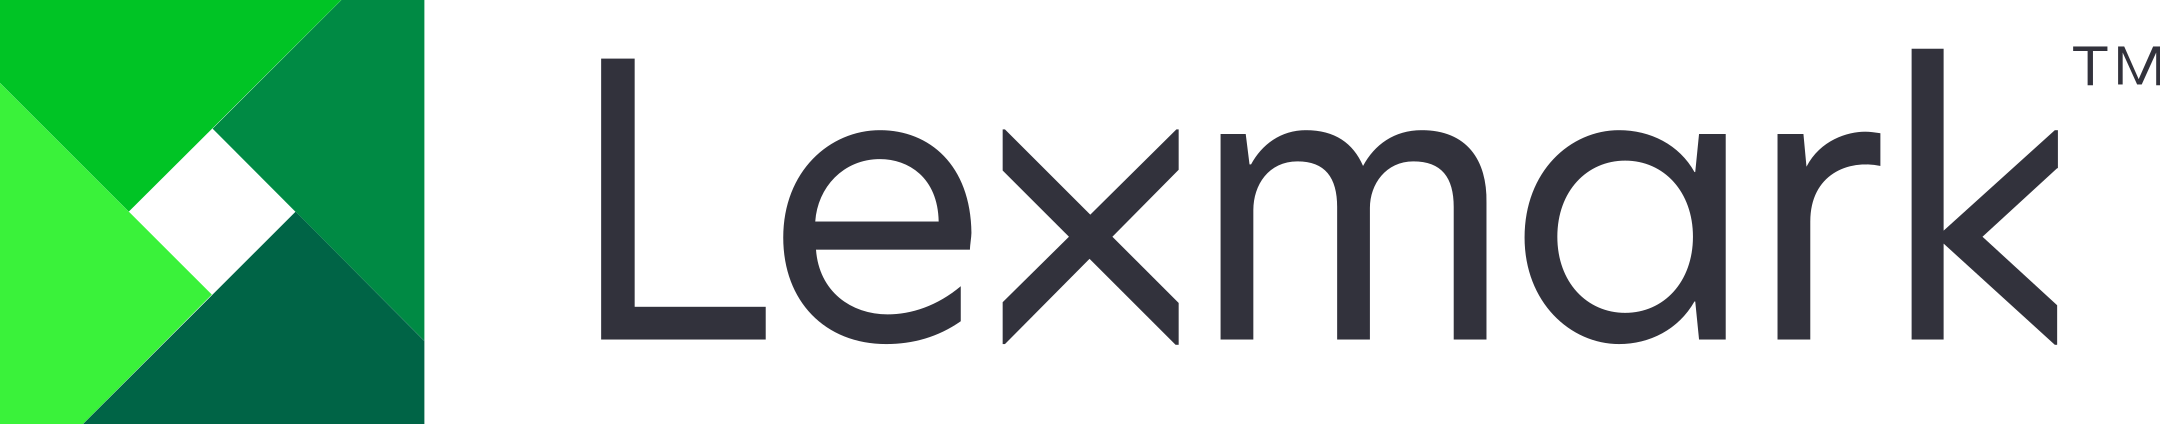 lexmark logo 1 1 - Lexmark Logo